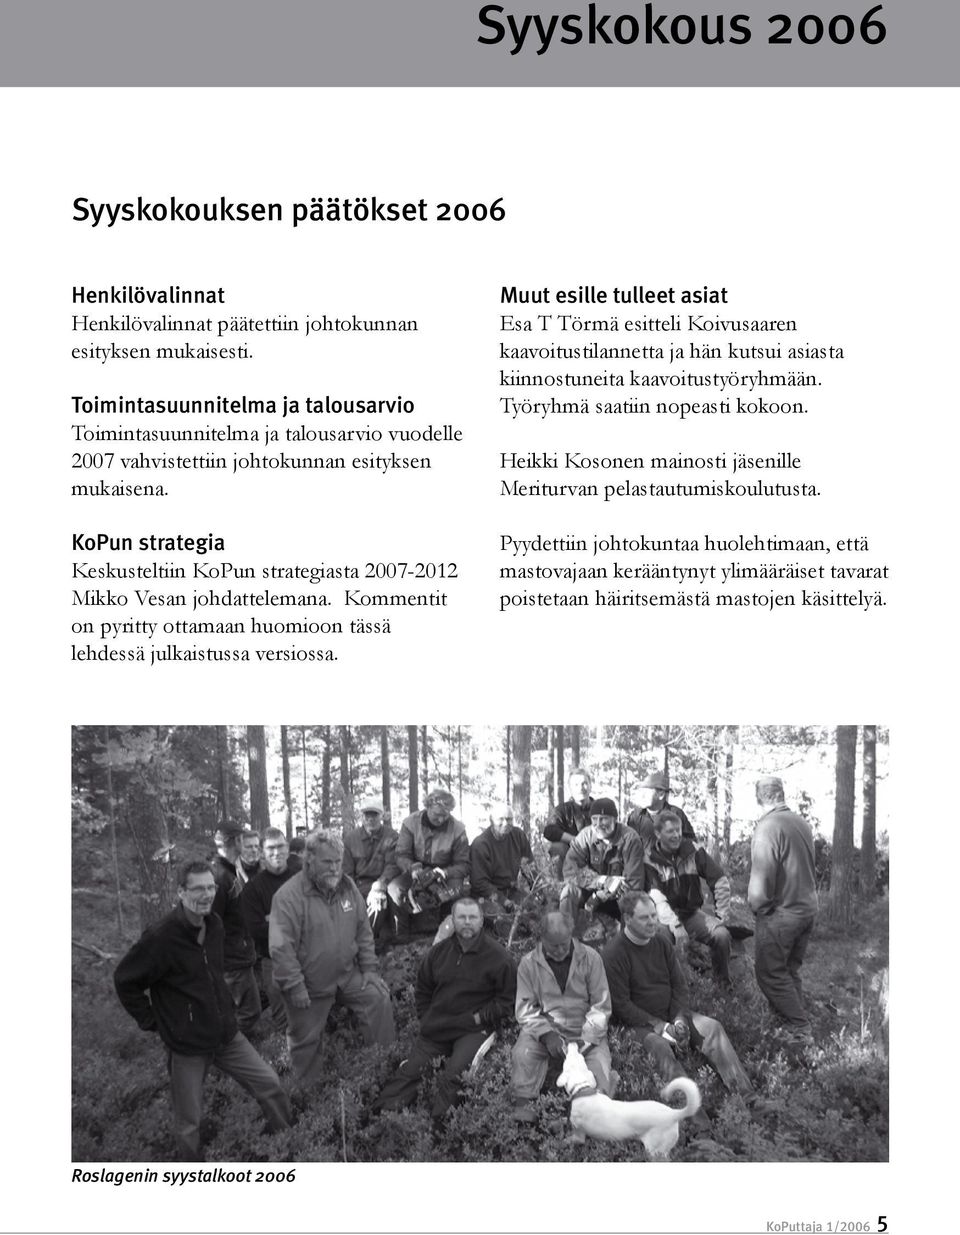 KoPun strategia Keskusteltiin KoPun strategiasta 2007-2012 Mikko Vesan johdattelemana. Kommentit on pyritty ottamaan huomioon tässä lehdessä julkaistussa versiossa.